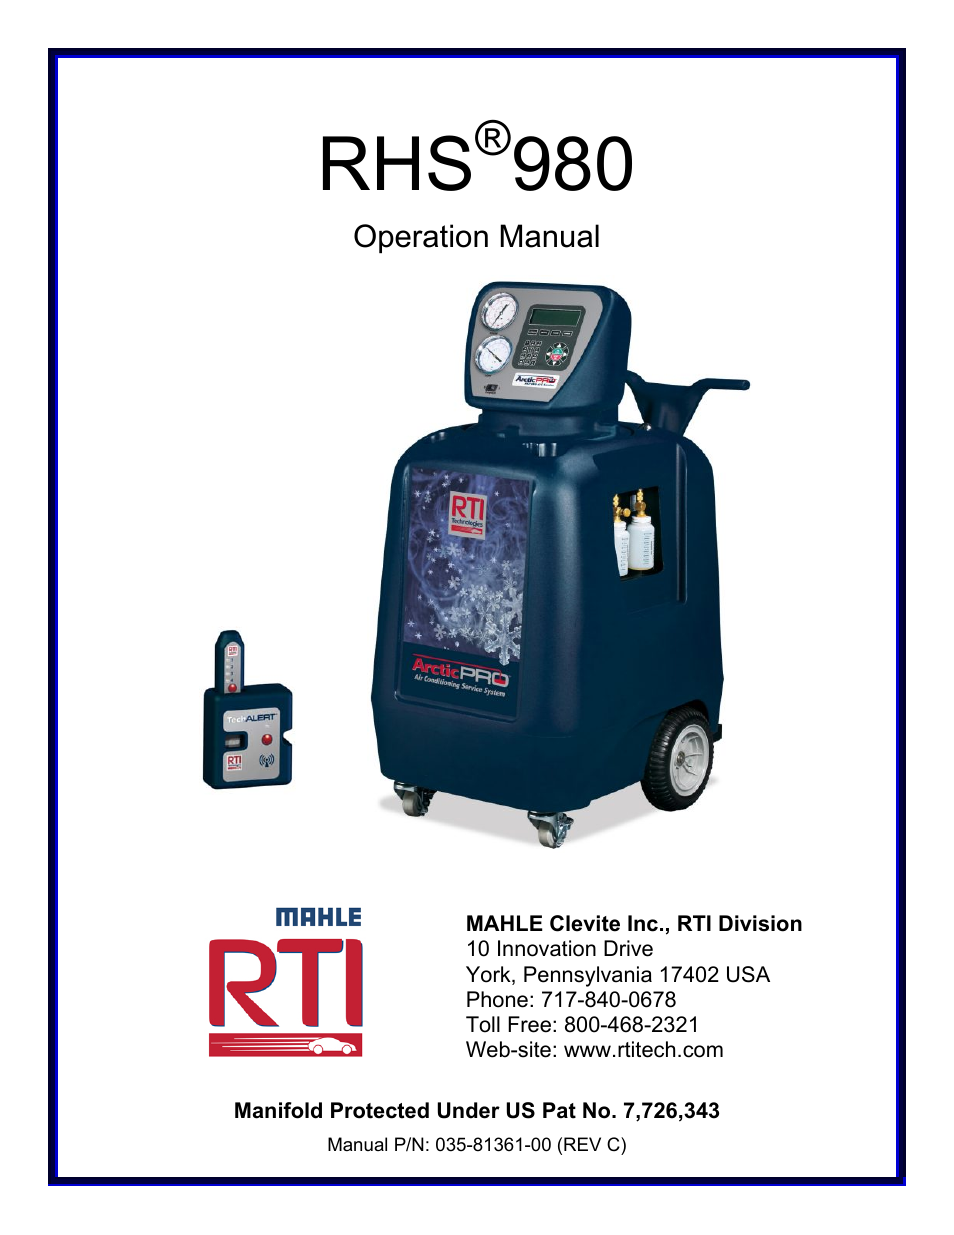 RHS980